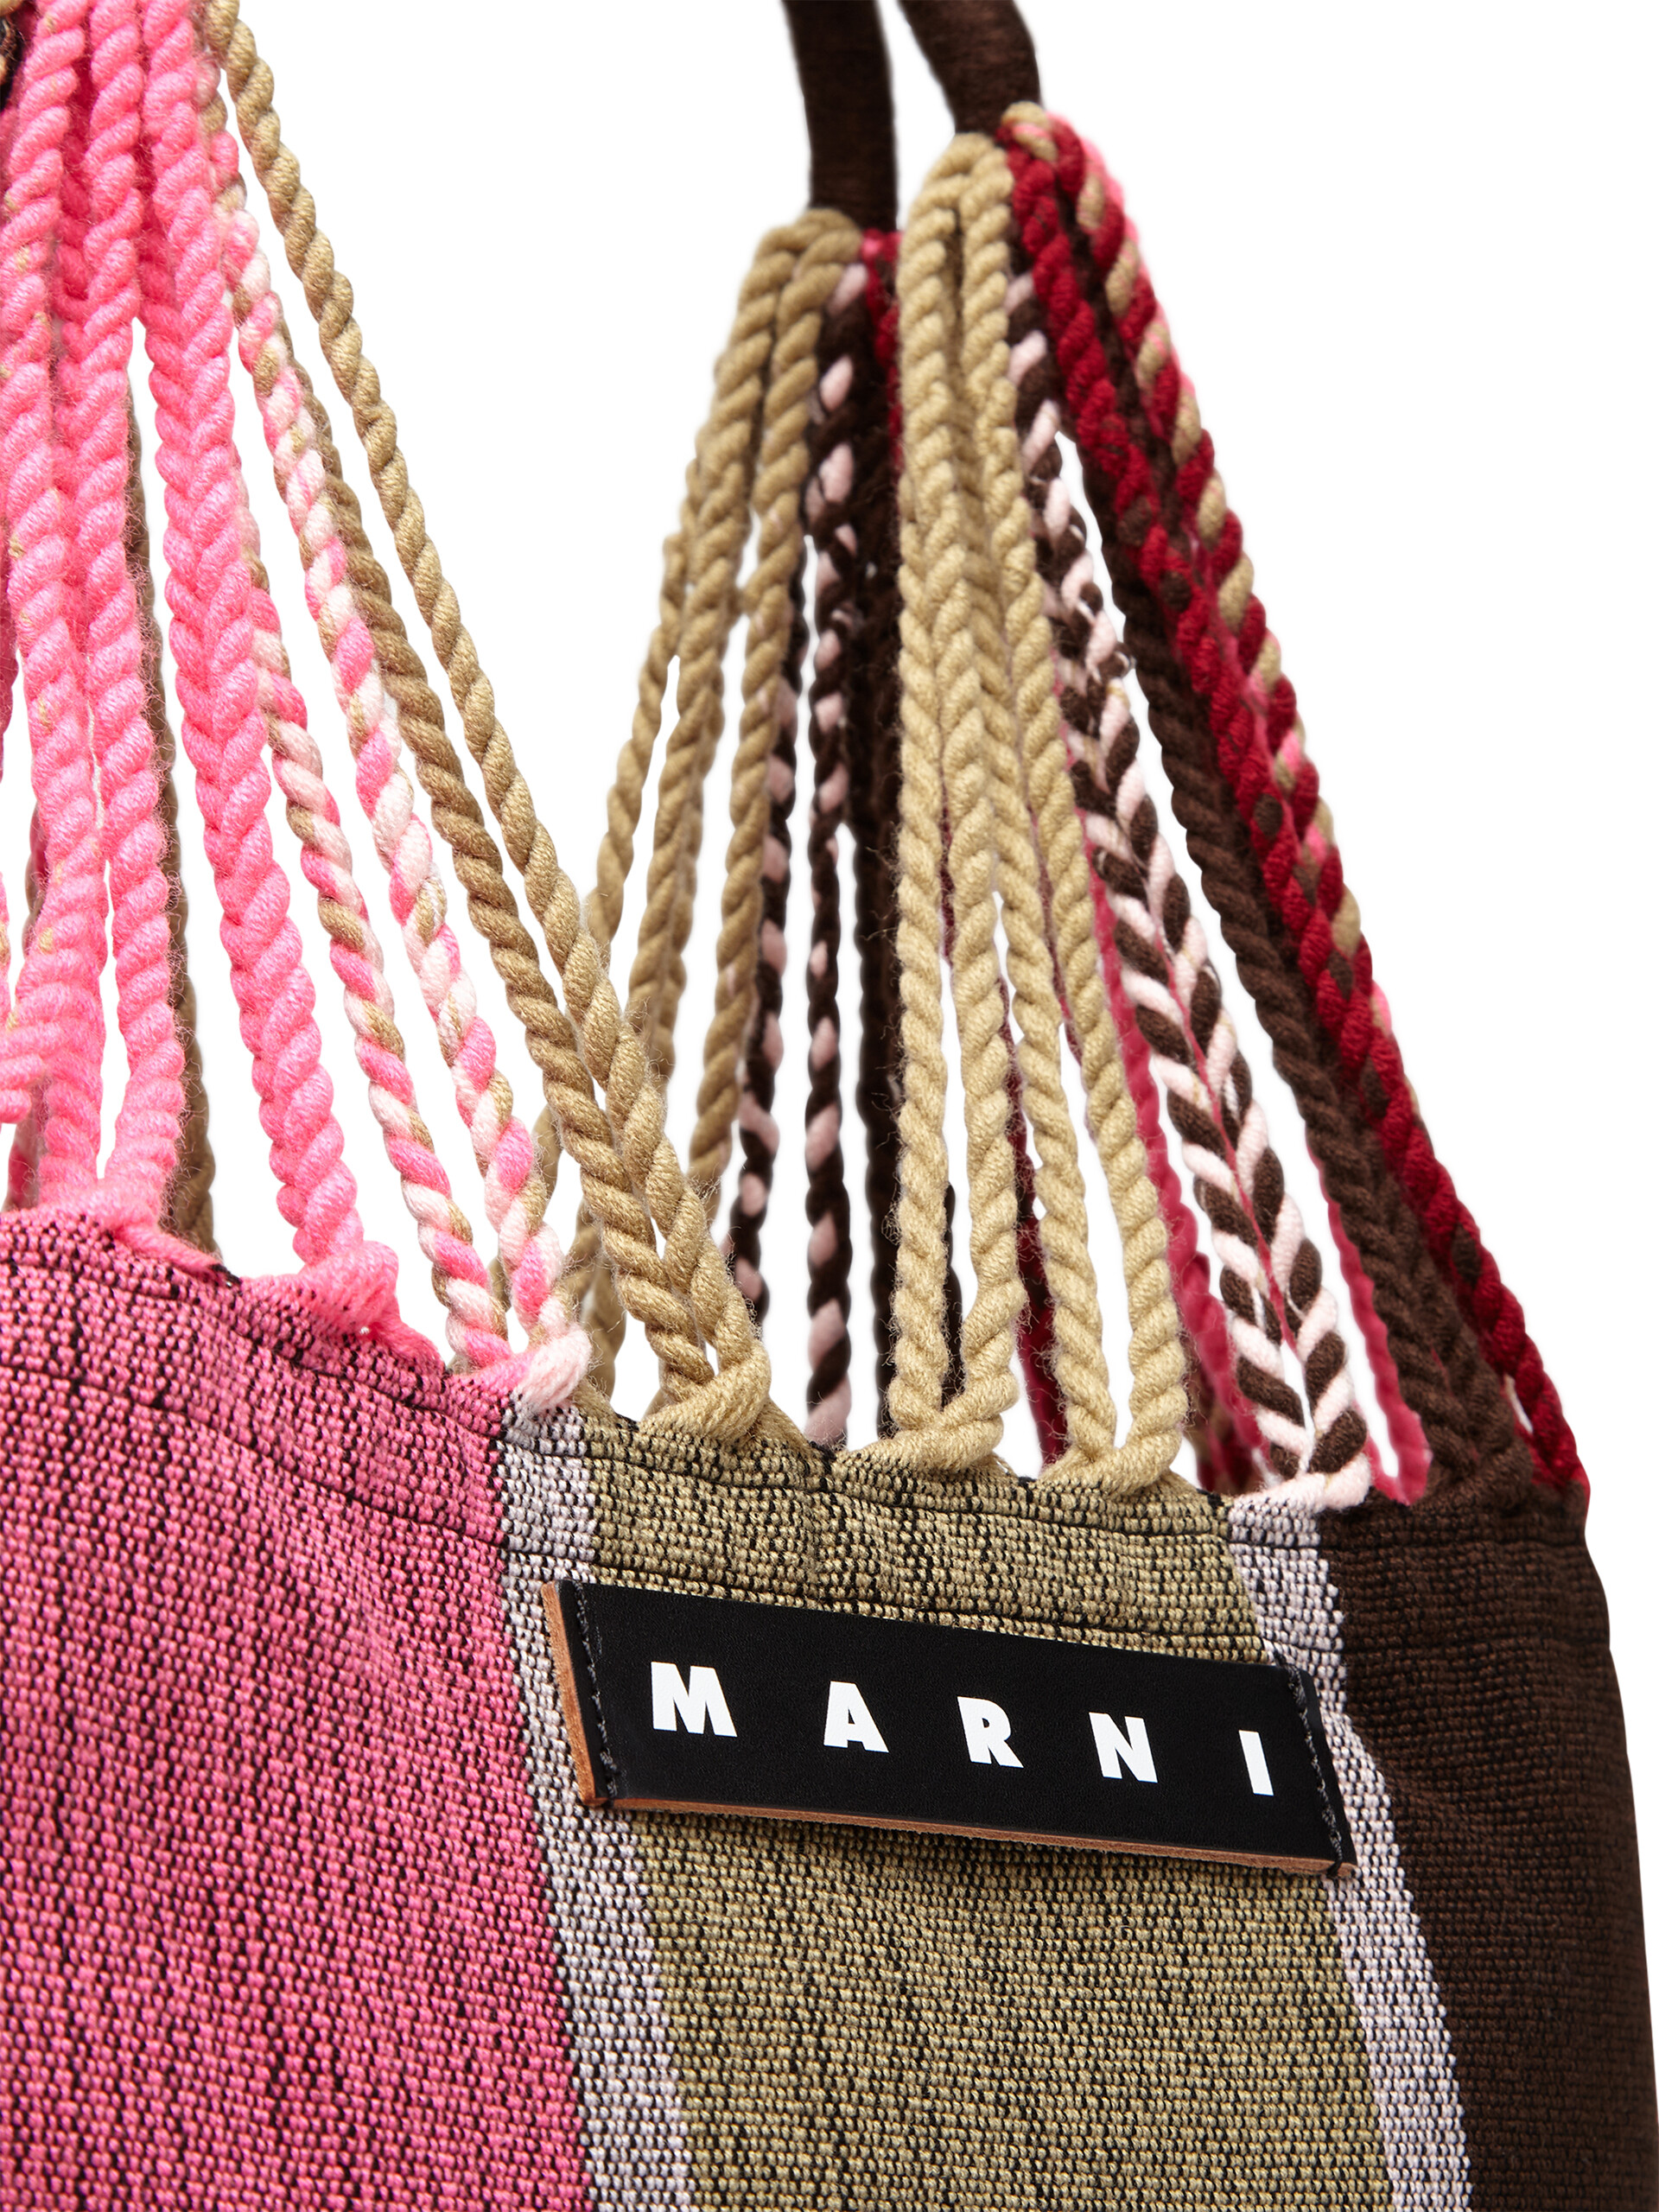 MARNI MARKET ポリエステル ショッピングバッグ ハンモック風ハンドル付き グレー/ターコイズ/レッド - ハンドバッグ - Image 4